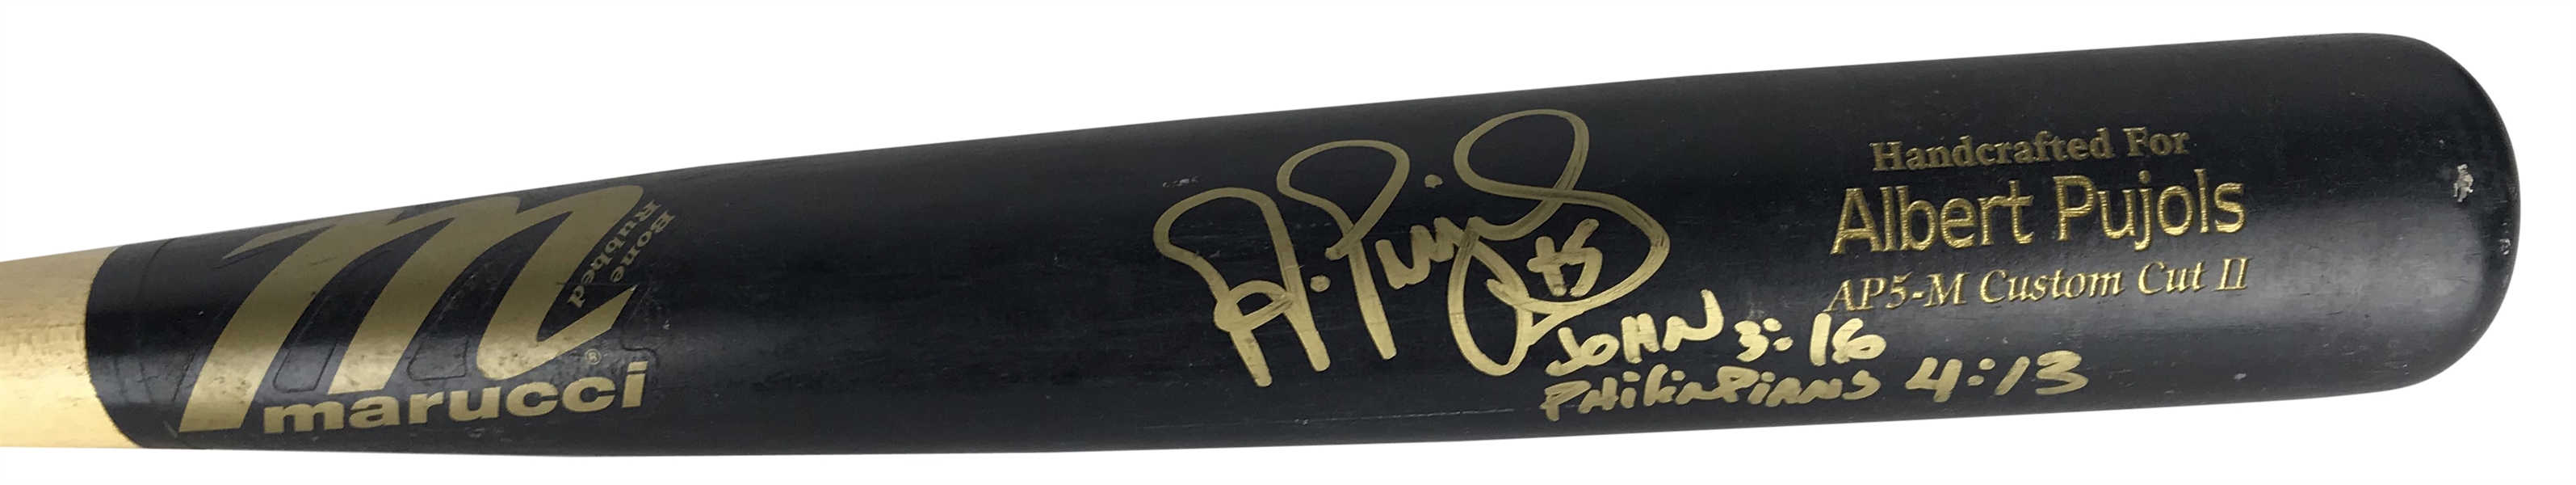 Albert Pujols Signed & Game Used 2010 Marucci AP5-M Baseball Bat PSA/DNA GU 9!